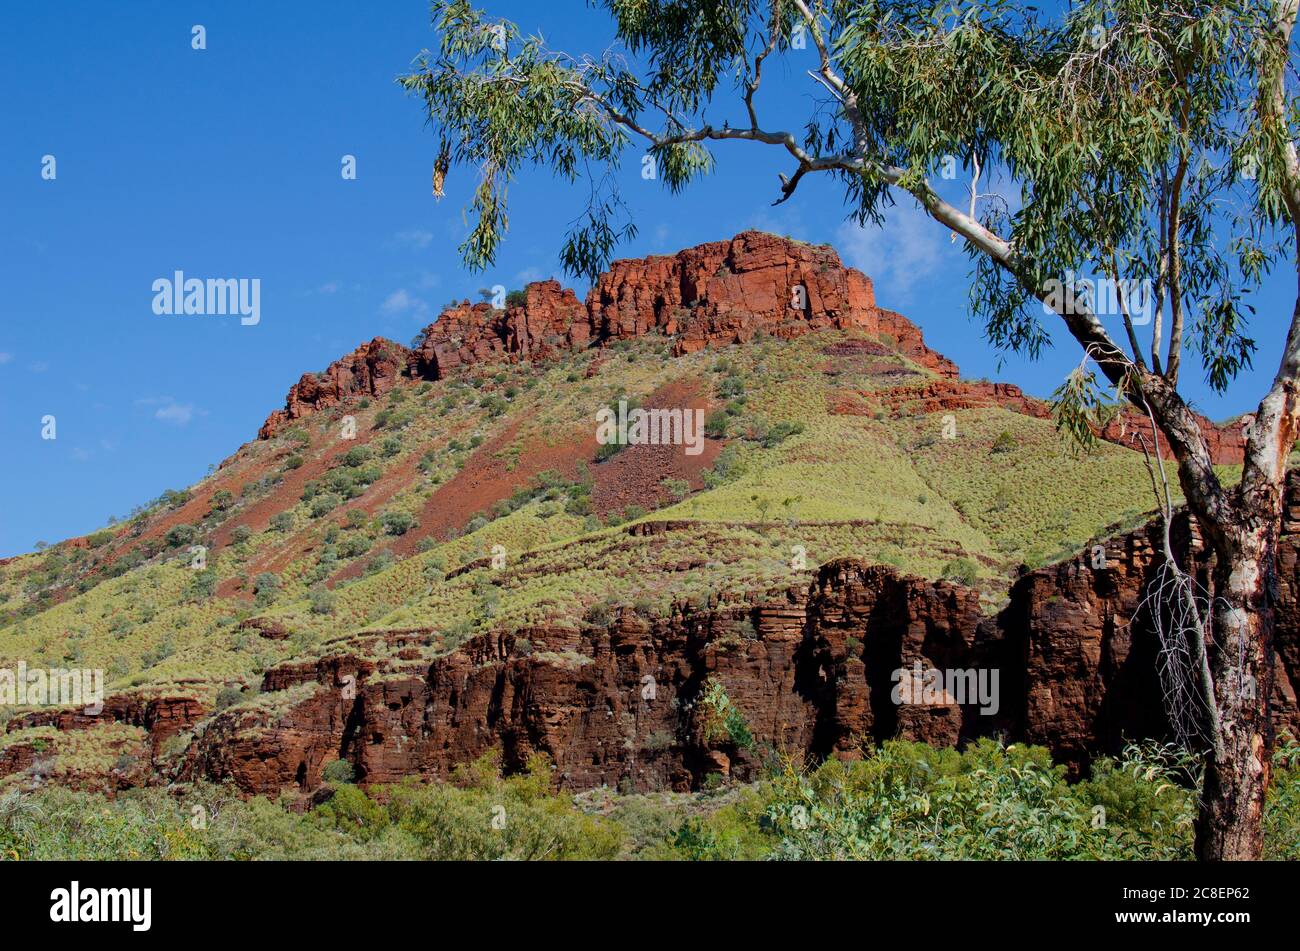 Outback Landschaft in abgelegener Landschaft Australien, mit roten Felsen Bergkette, grünen Busch, Baum und Sommer sonnig blauen Himmel als Hintergrund. Stockfoto